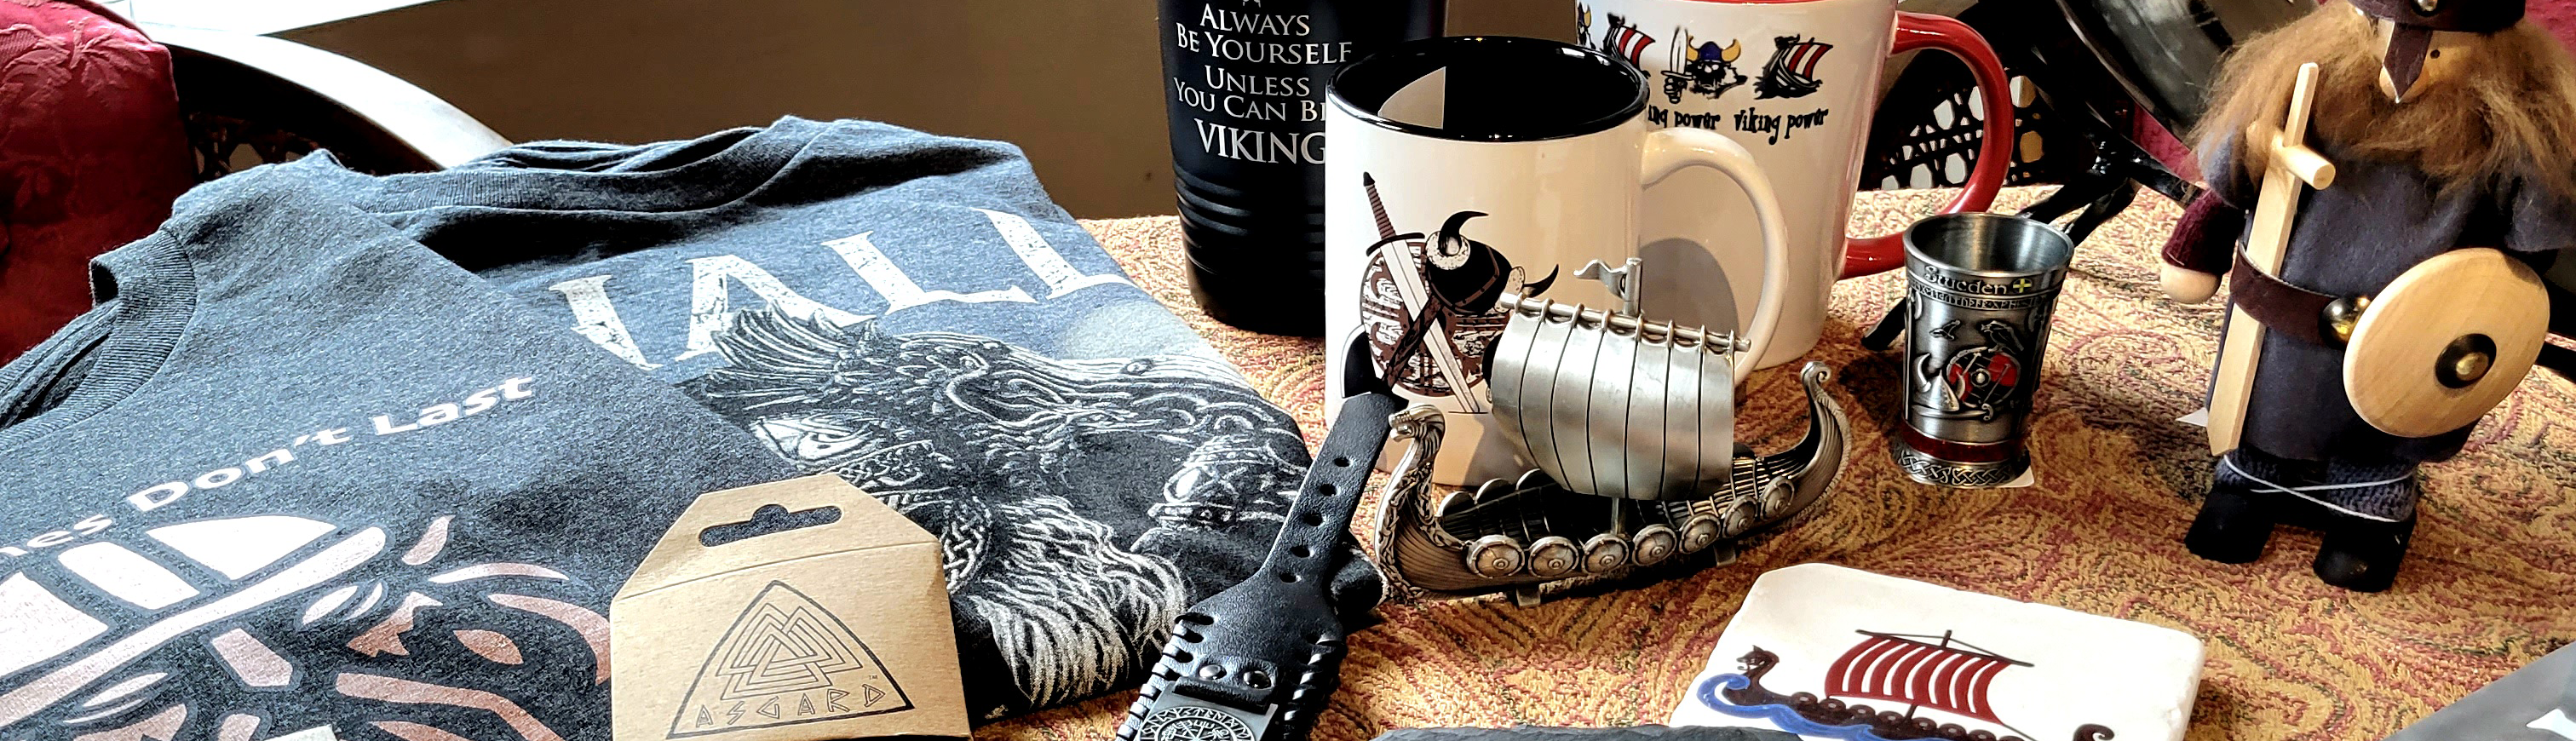 Viking Knives and Axes